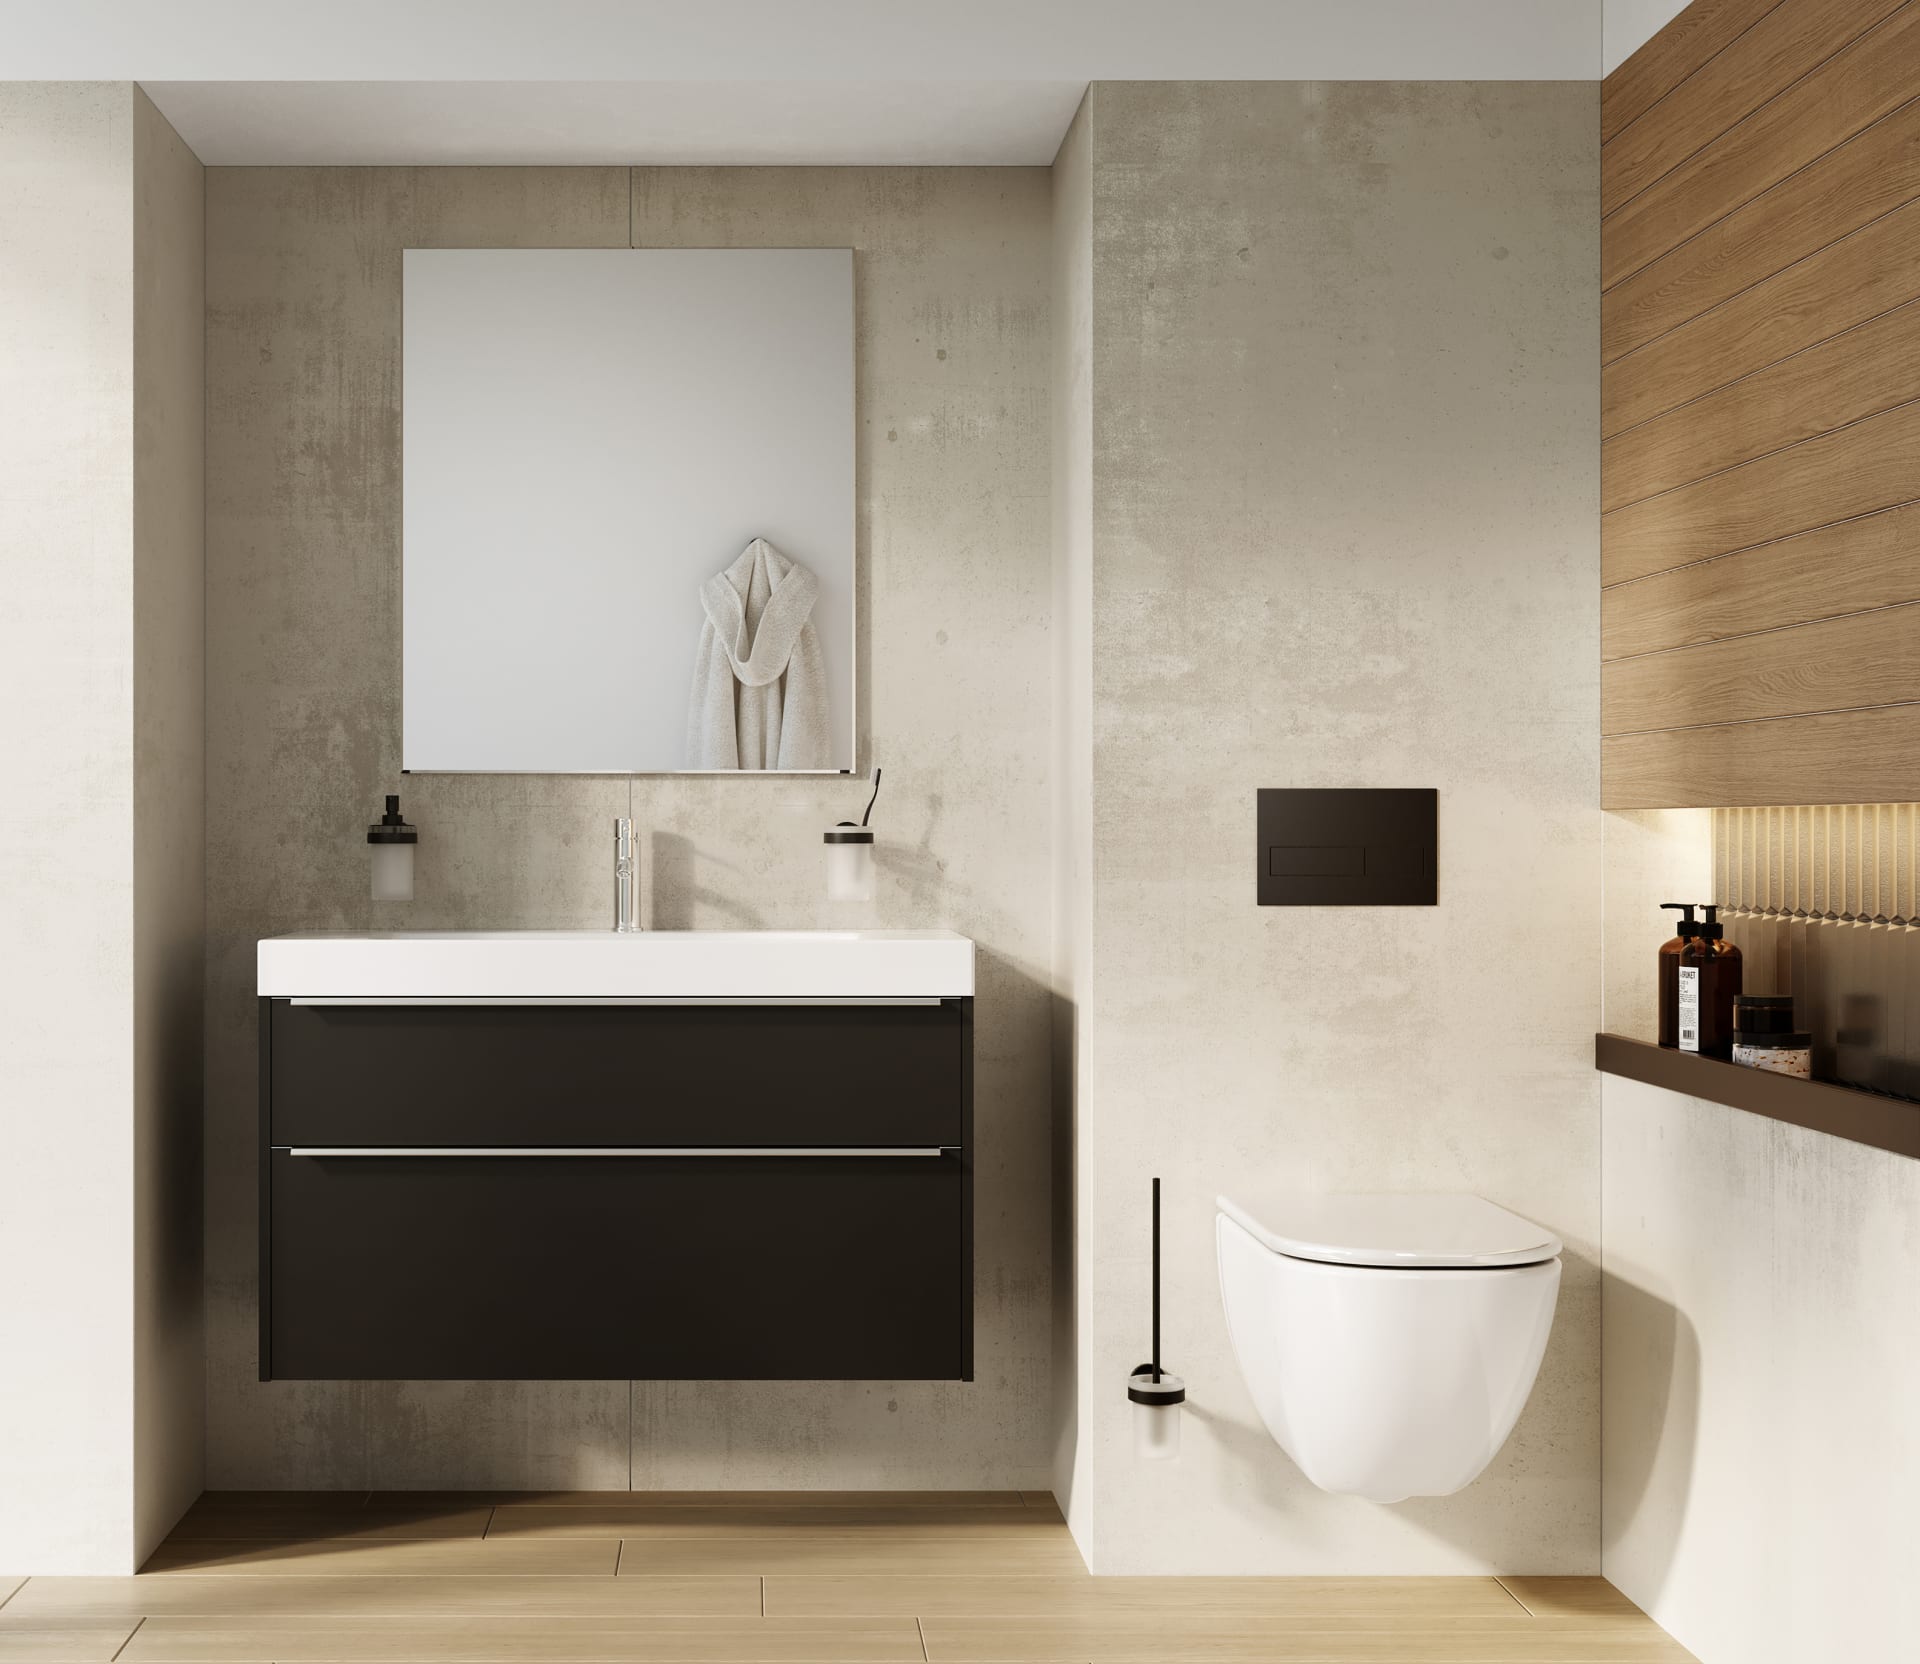 Bydlení mezi panely 4-23: Umyvadlo je klíčovým funkčním i designovým prvkem každé koupelny.